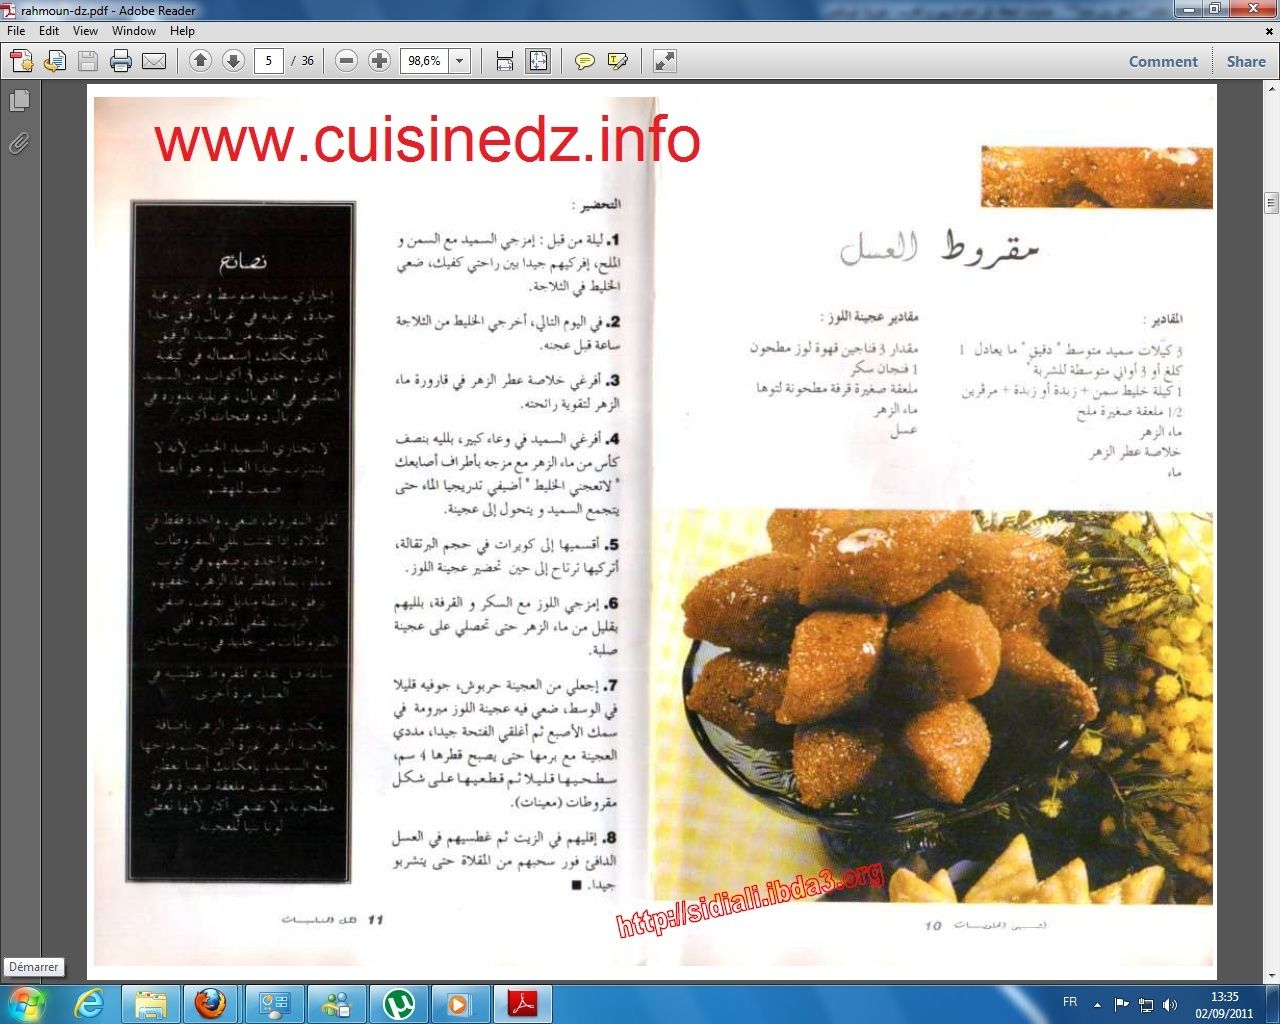 كتاب الحلويات الخاص بأميرة المطبخ الجزائري السيدة بوحامد مع أكثر من 40 وصفة 1518